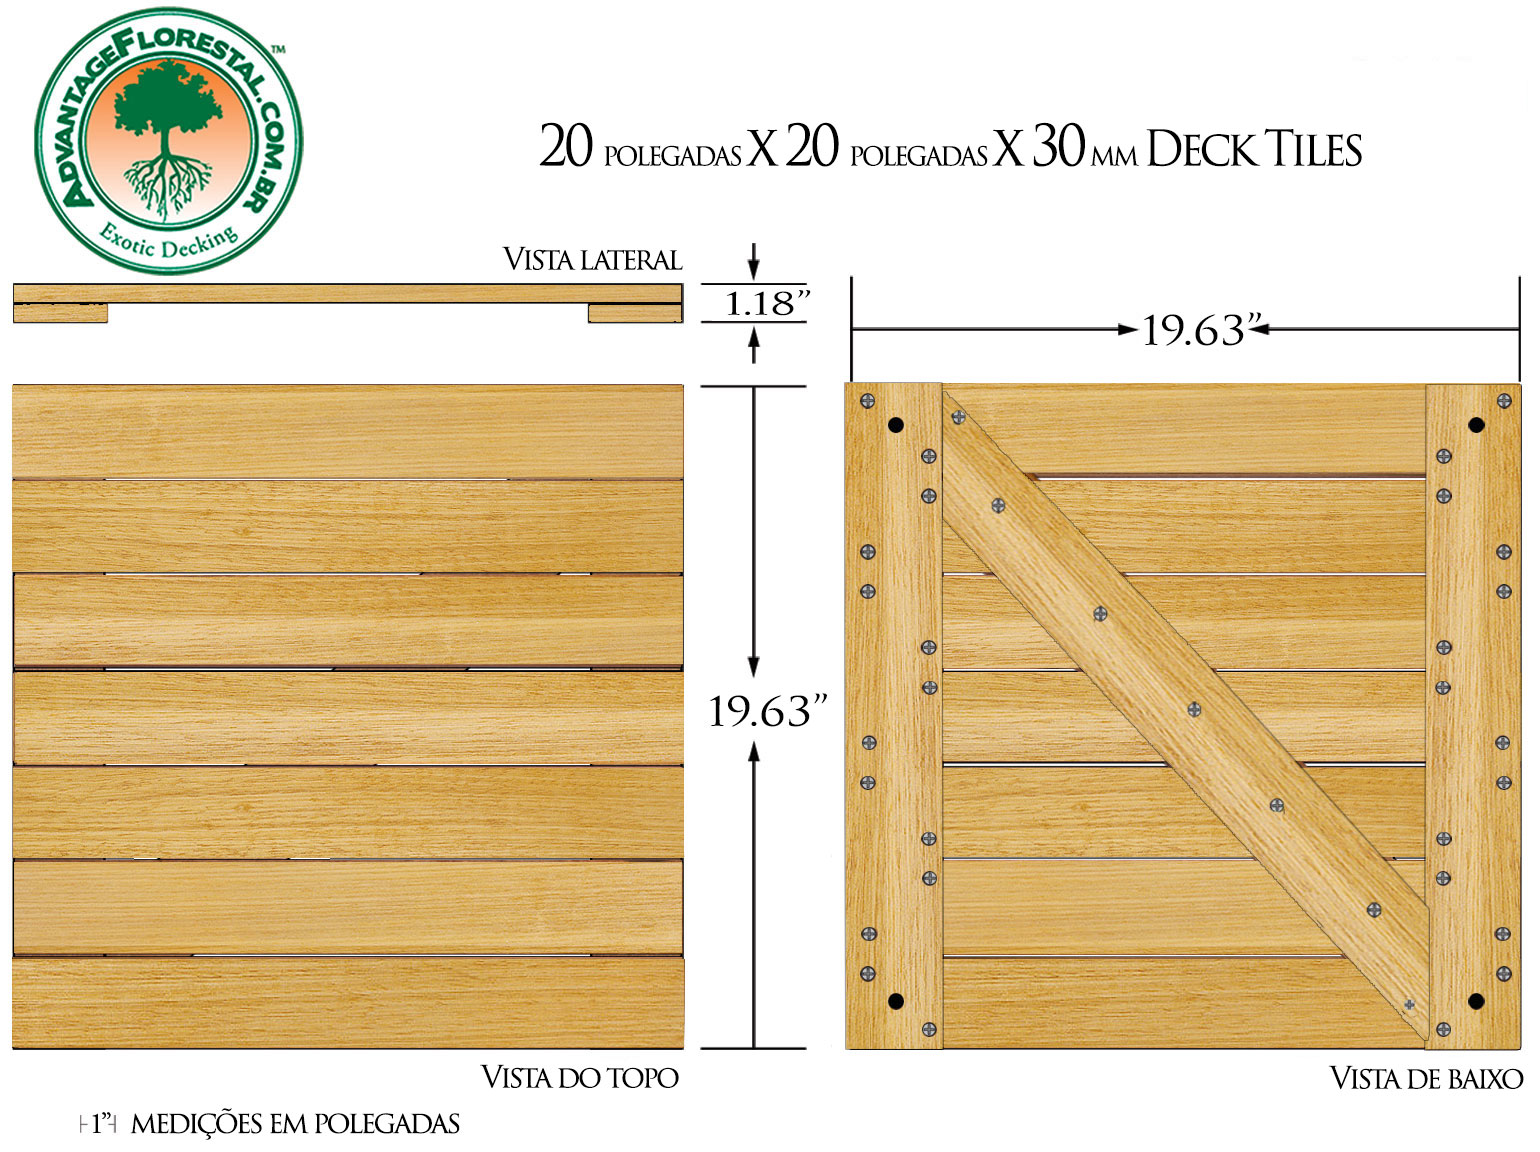 Tauari Deck Tile 20 in. x 20 in. x 30mm